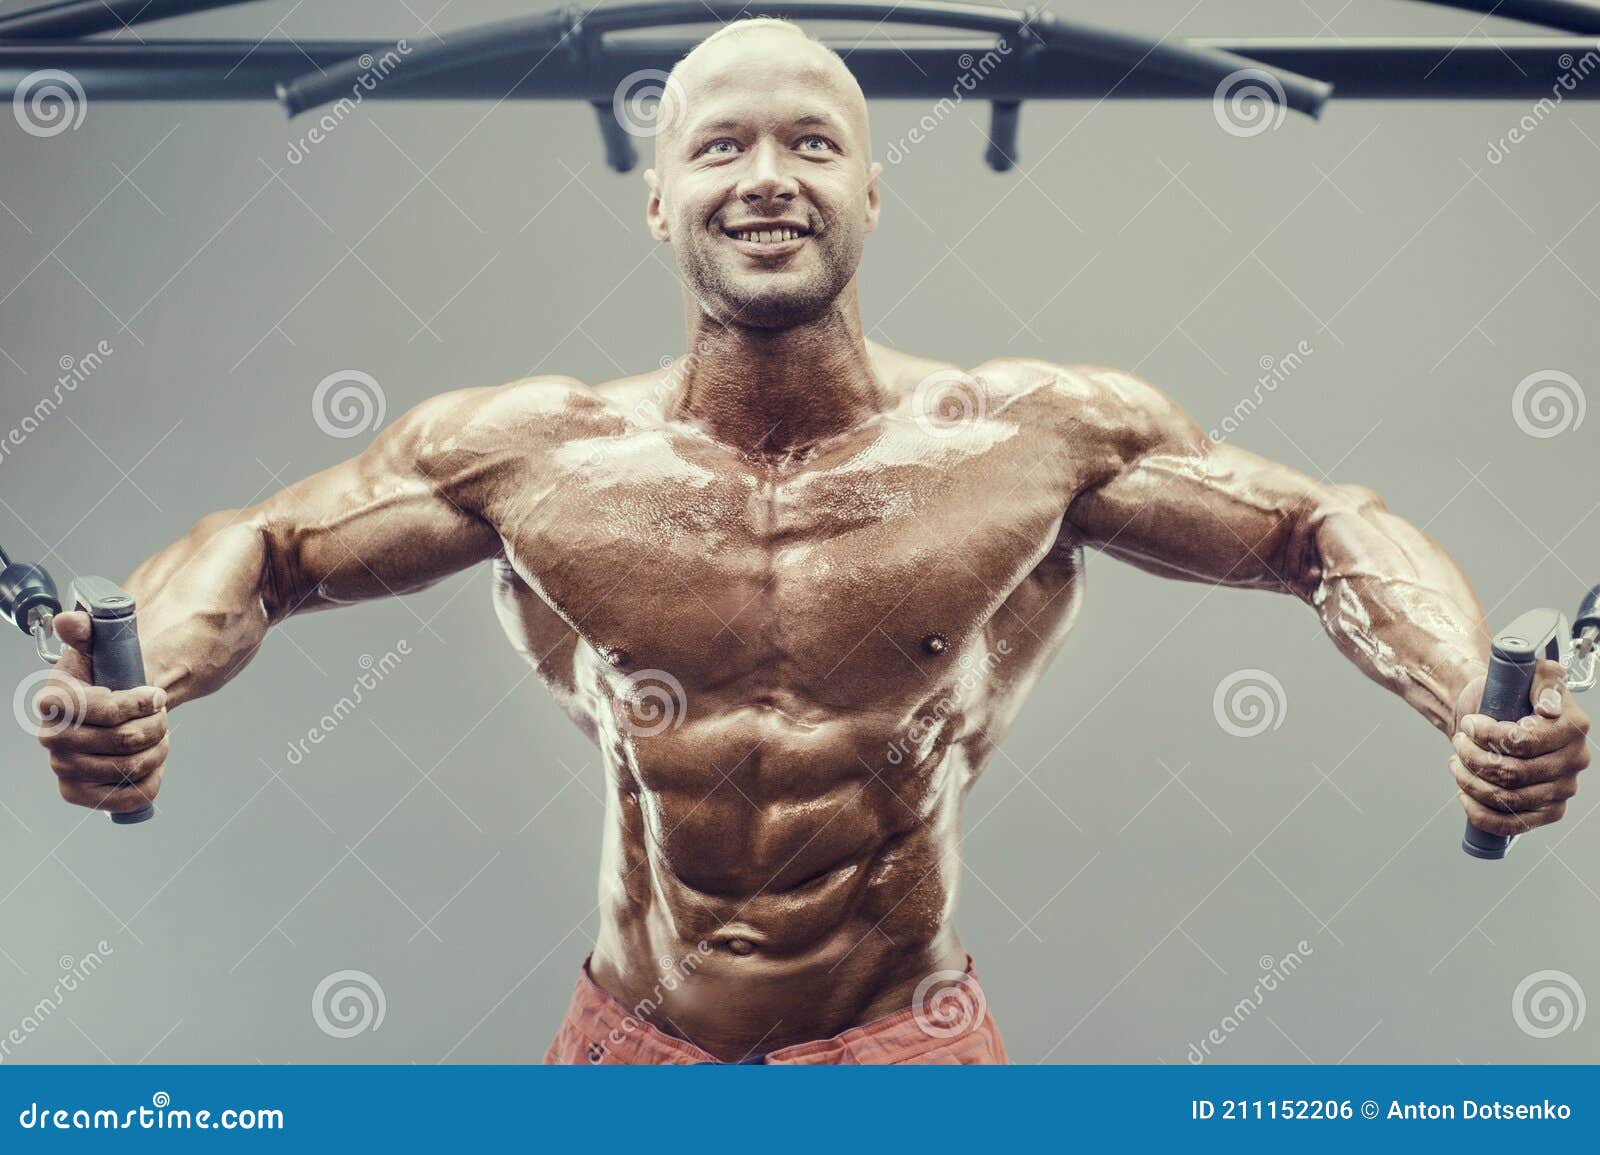 https://thumbs.dreamstime.com/z/musculation-homme-athl%C3%A9tique-bodybuilder-beau-fort-rugueux-pomper-les-muscles-entra%C3%AEnement-fitness-et-sain-concept-fond-211152206.jpg